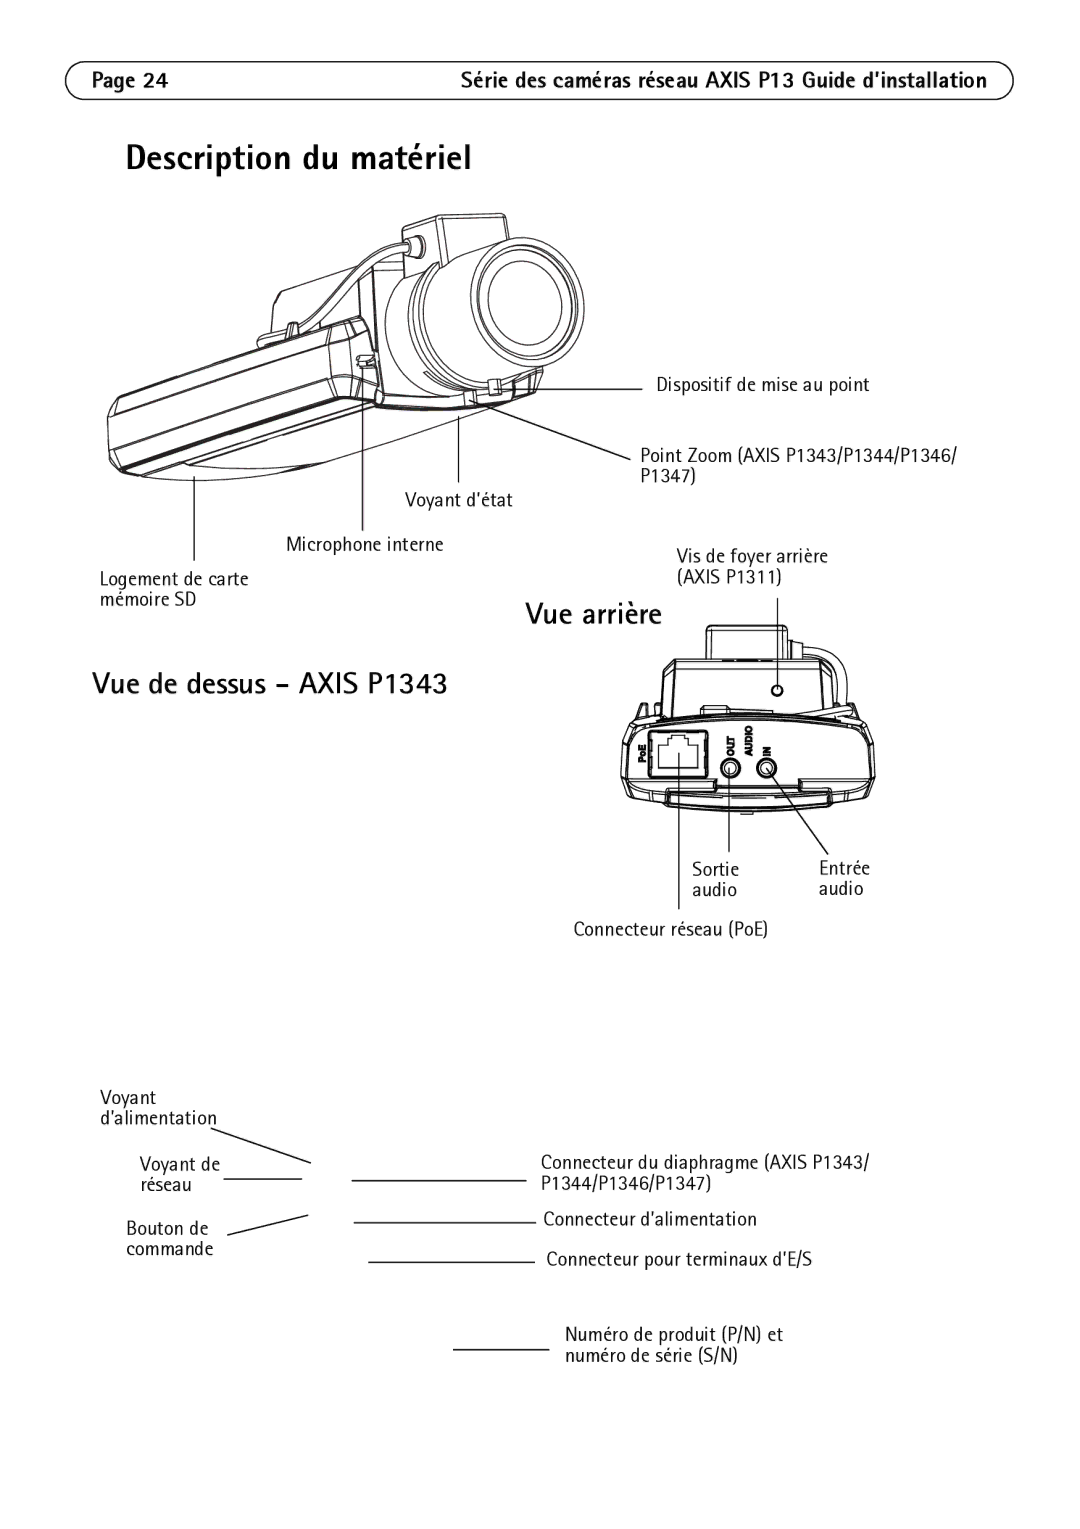 Axis Communications P1344, P1347, P1311 manual Description du matériel, Vue arrière, Vue de dessus Axis P1343 